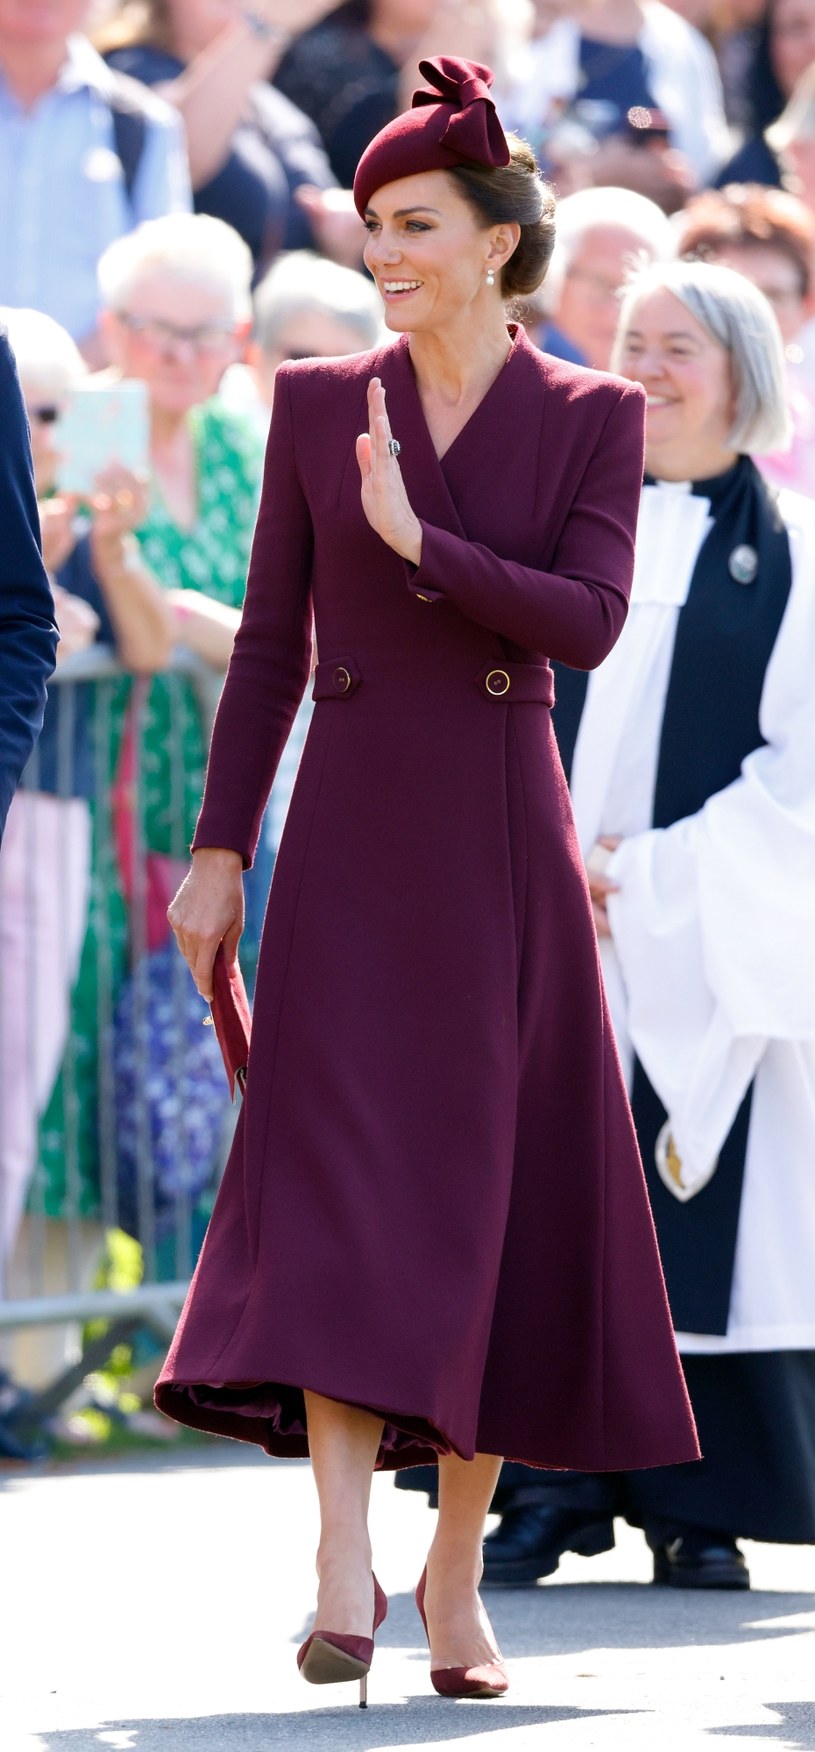 Księżna Kate w dopasowanej, burgundowej sukience /Max Mumby/Indigo /Getty Images